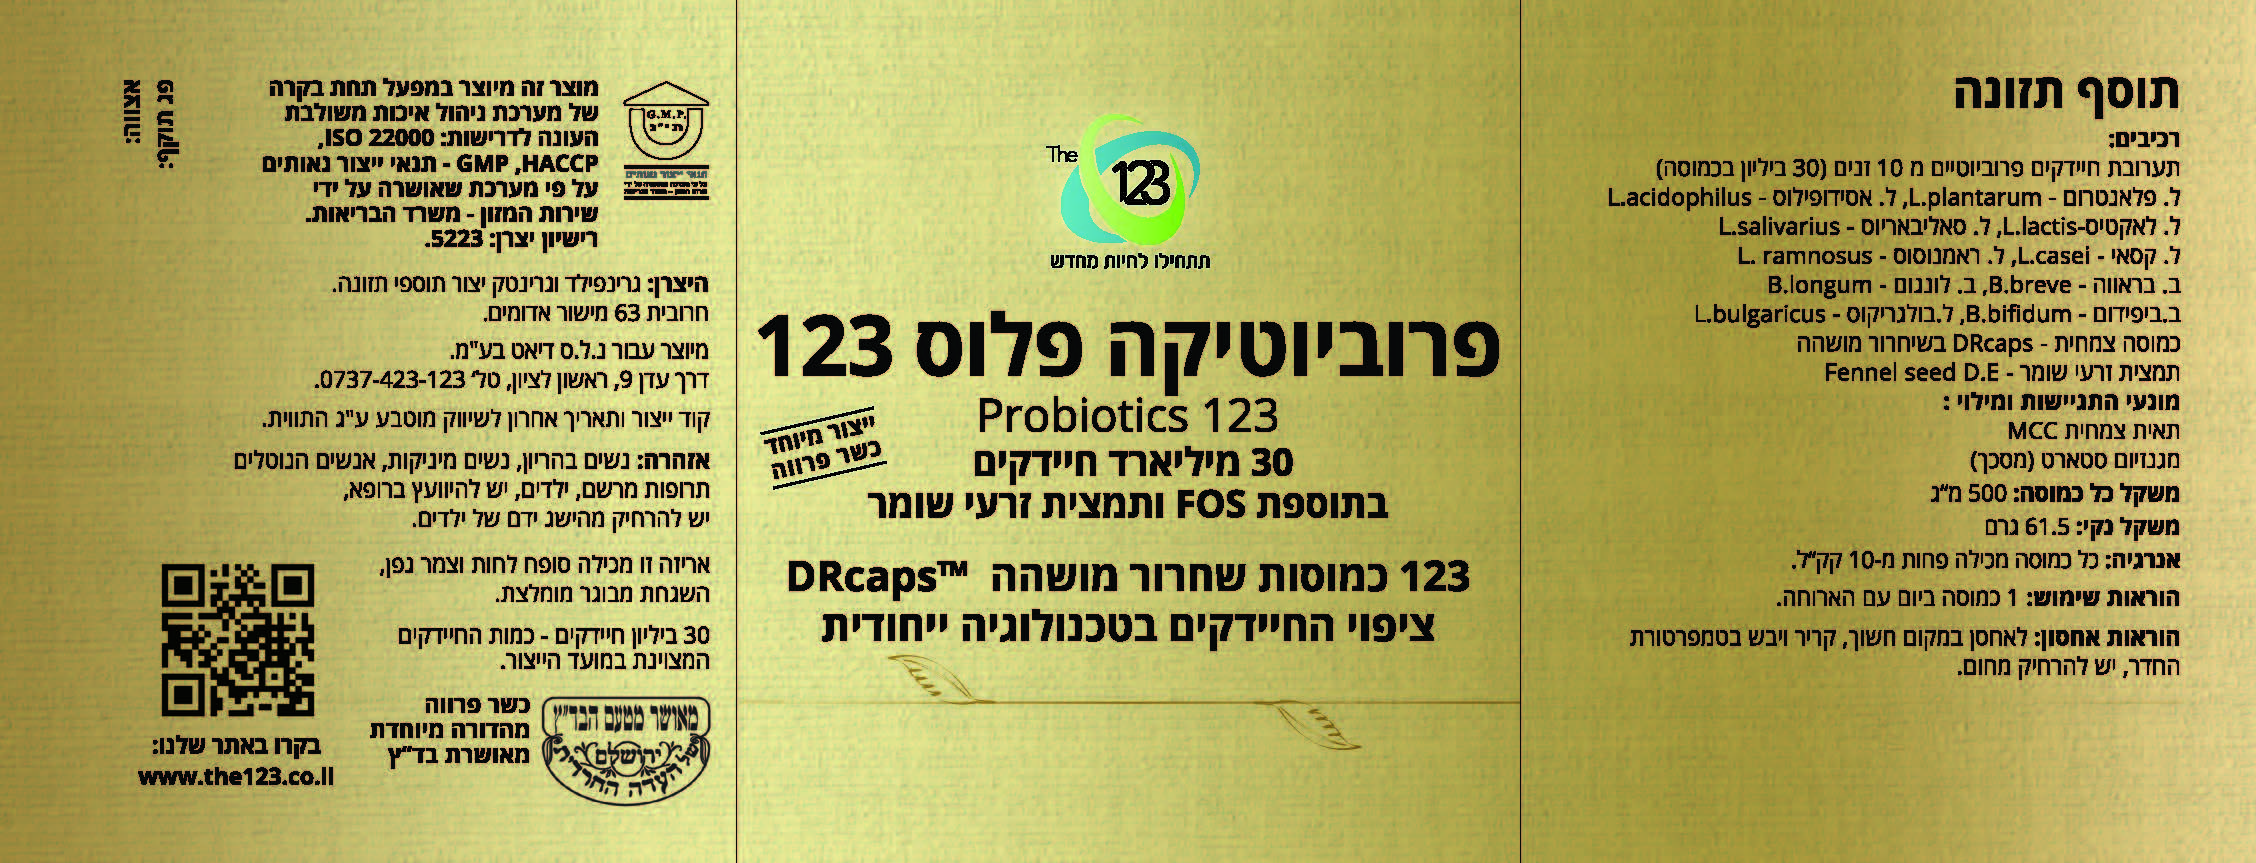 probiotics30-label